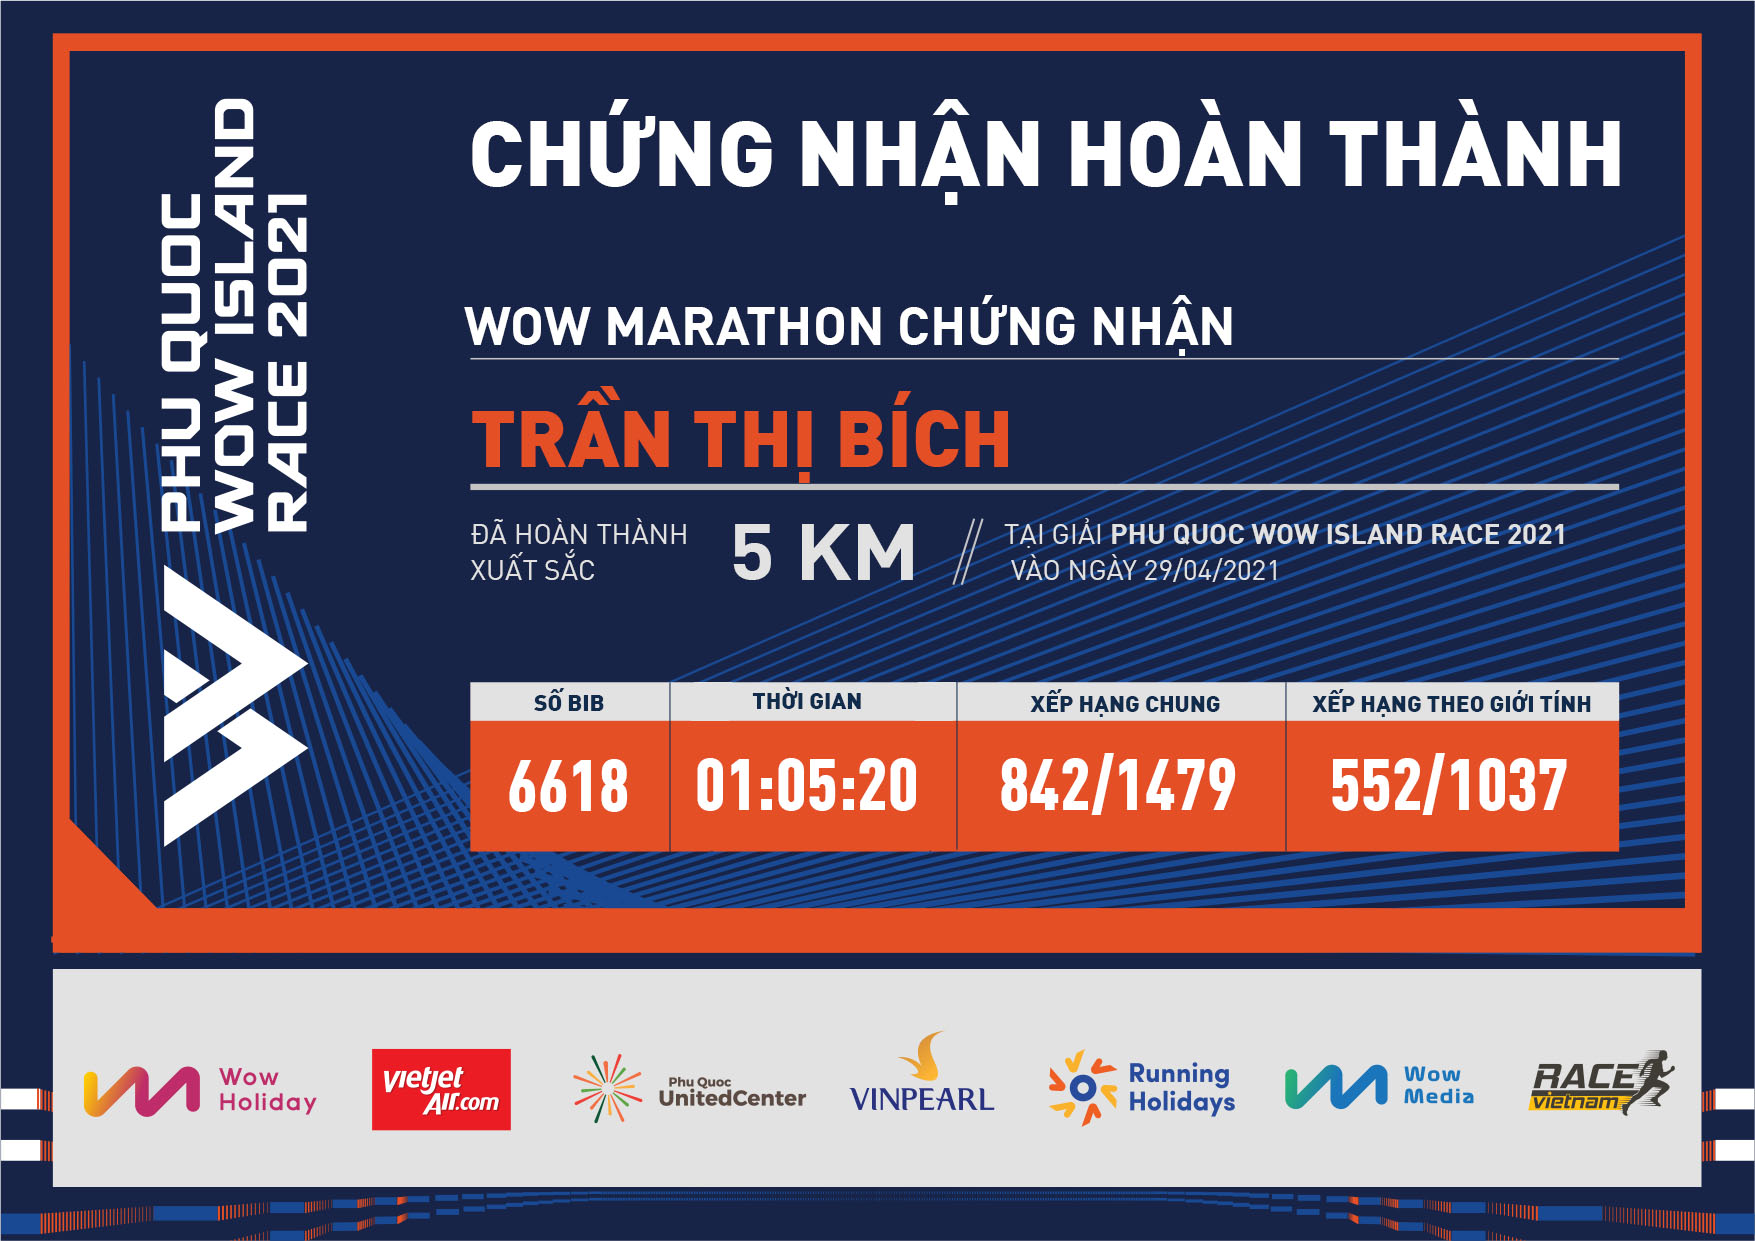 6618 - Trần Thị Bích